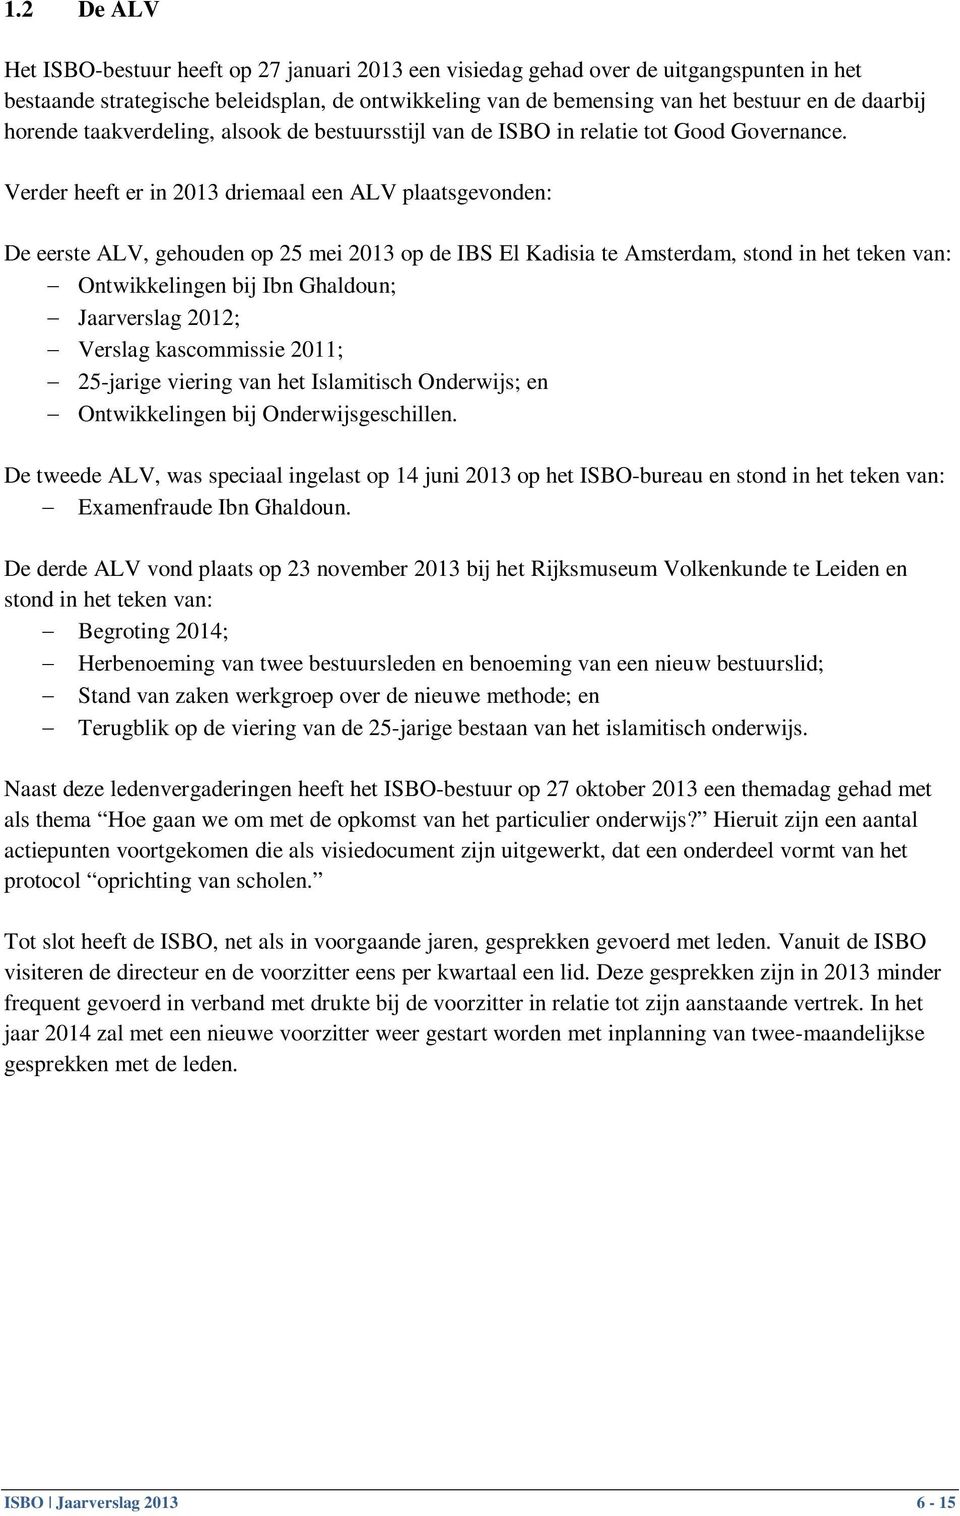 Verder heeft er in 2013 driemaal een ALV plaatsgevonden: De eerste ALV, gehouden op 25 mei 2013 op de IBS El Kadisia te Amsterdam, stond in het teken van: Ontwikkelingen bij Ibn Ghaldoun; Jaarverslag